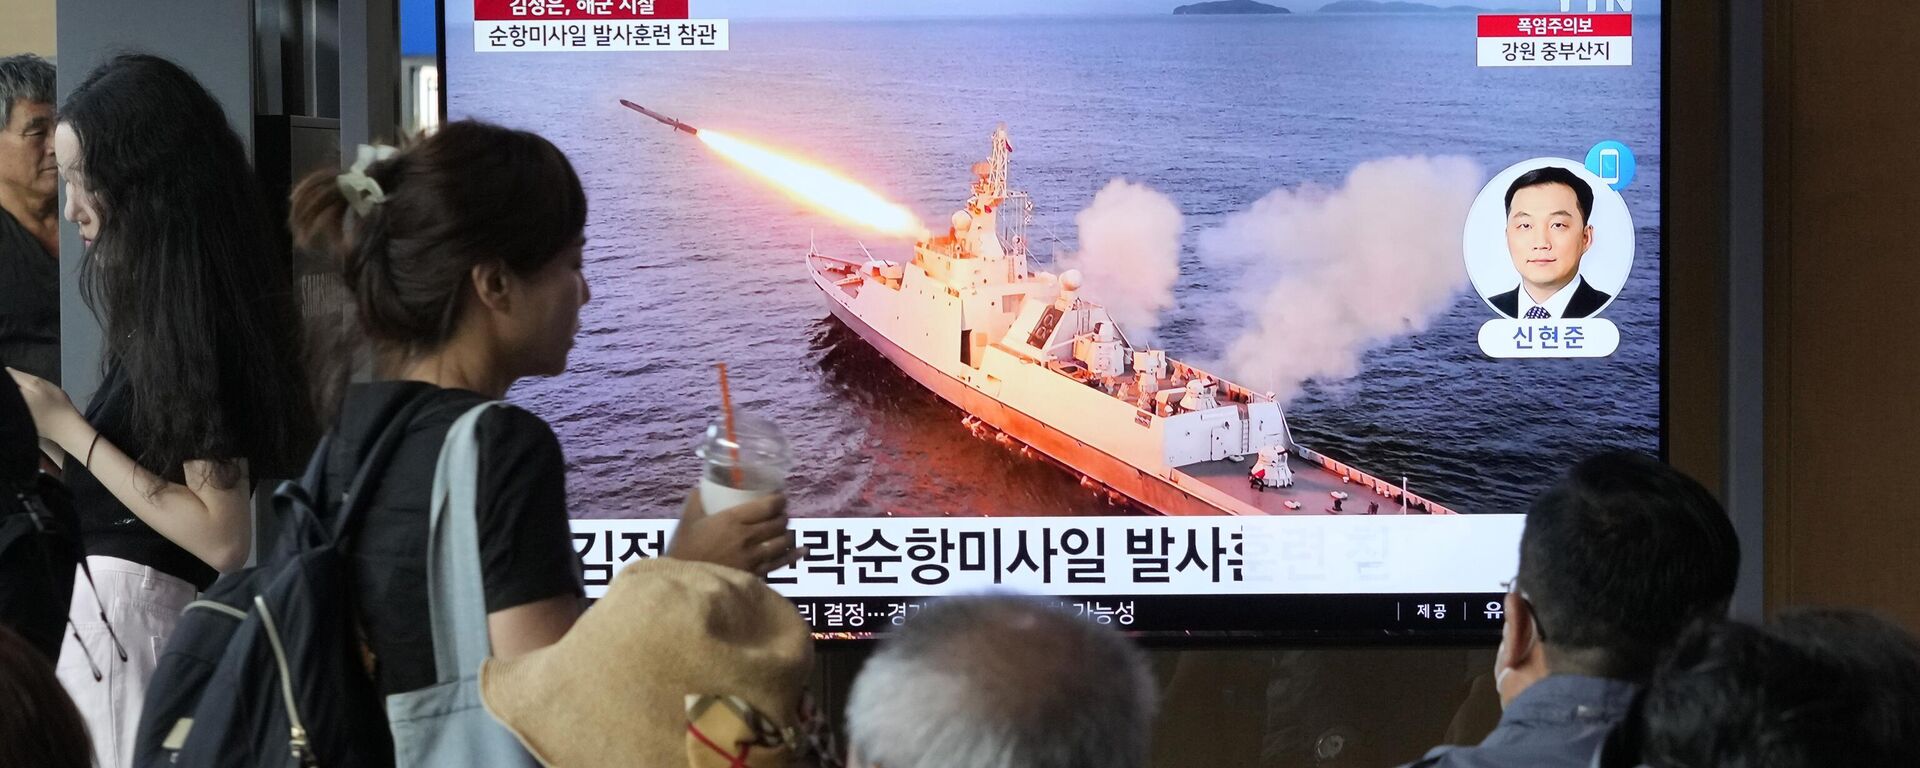 El lanzamiento de un misil de Corea del Norte durante un programa de noticias en la estación de tren de Seúl, Corea del Sur, el  21 de agosto de 2023  - Sputnik Mundo, 1920, 02.10.2023